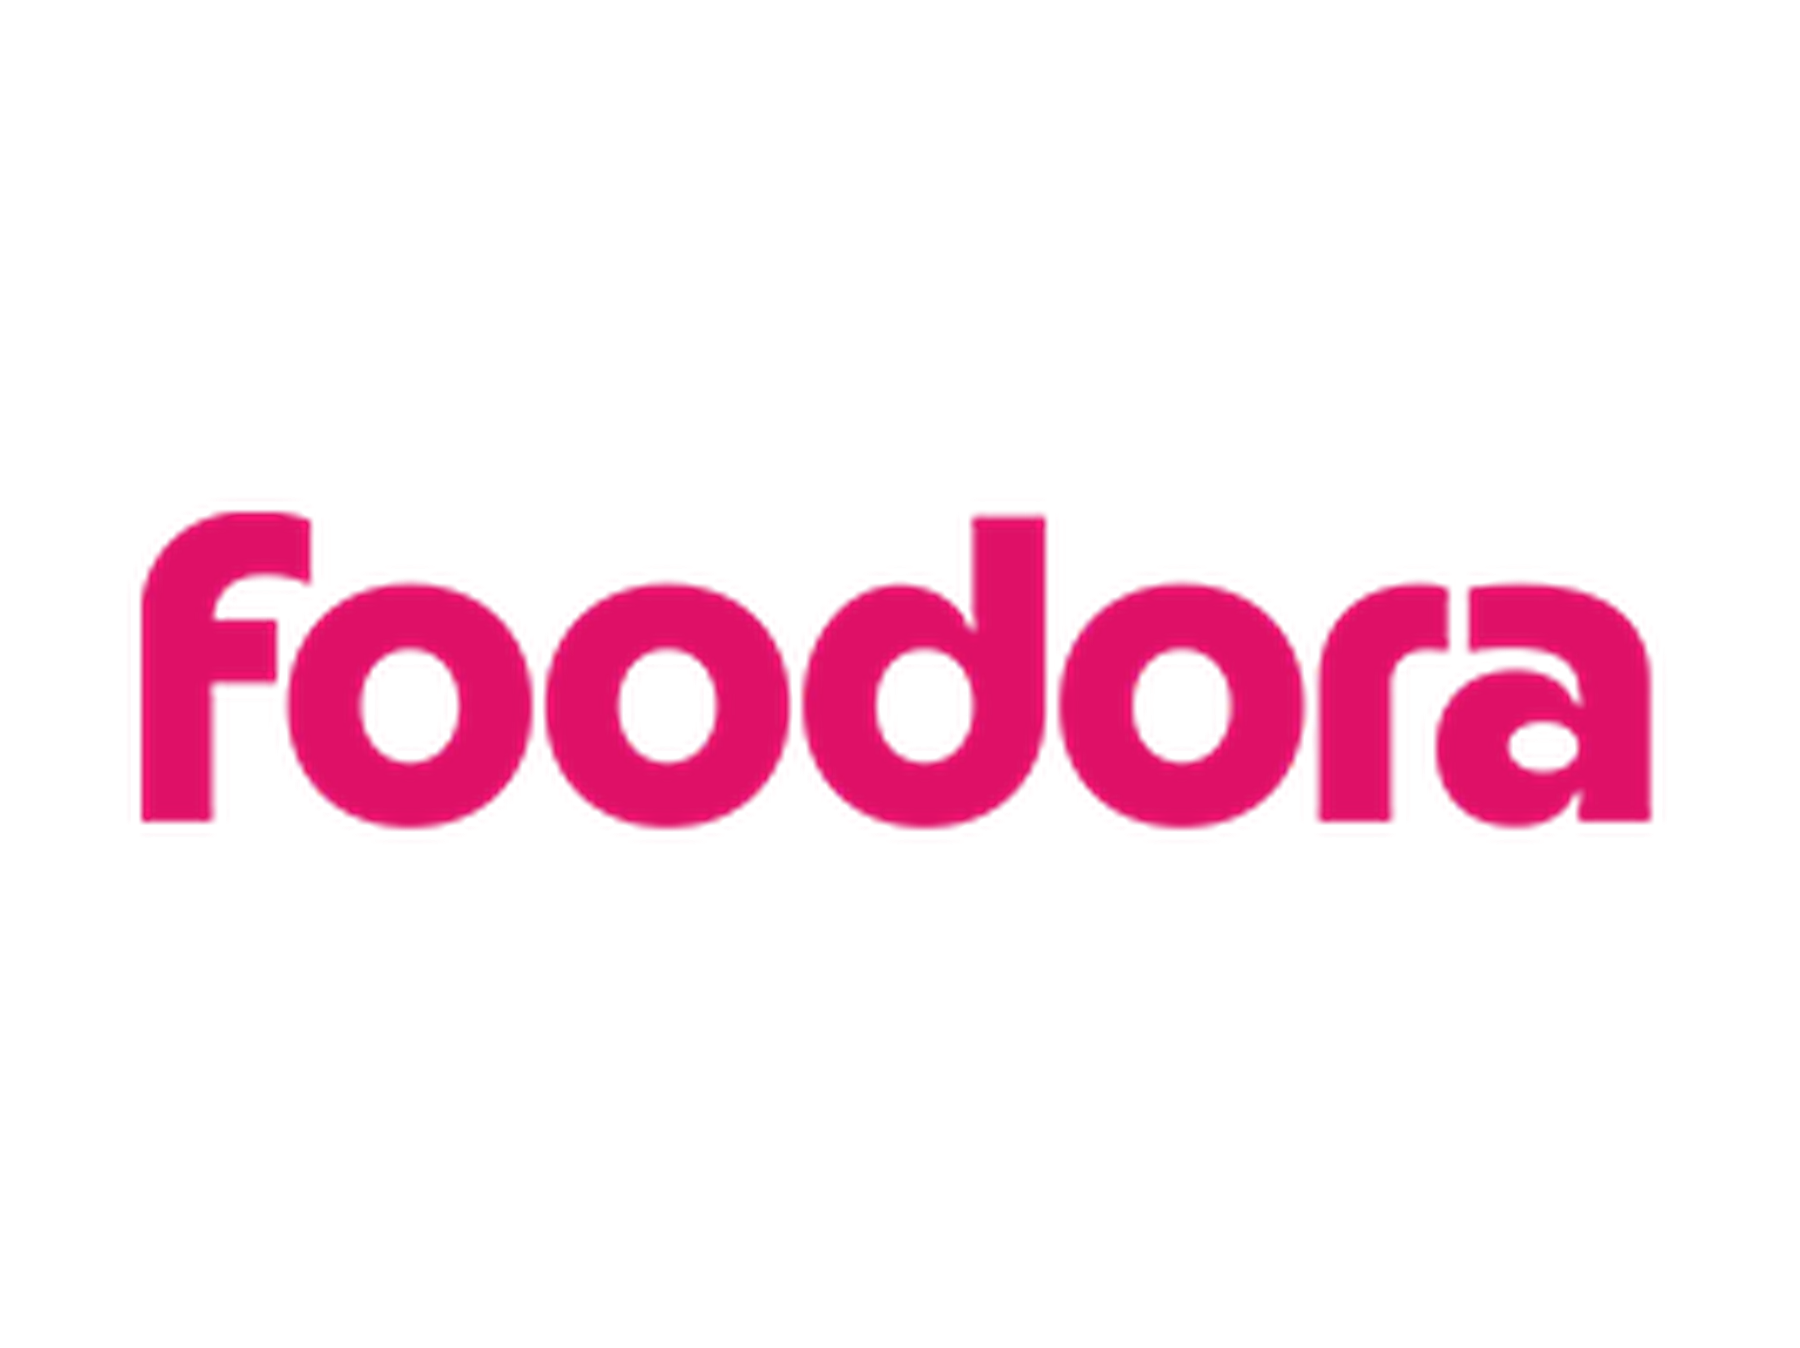 Foodora rabattkoder